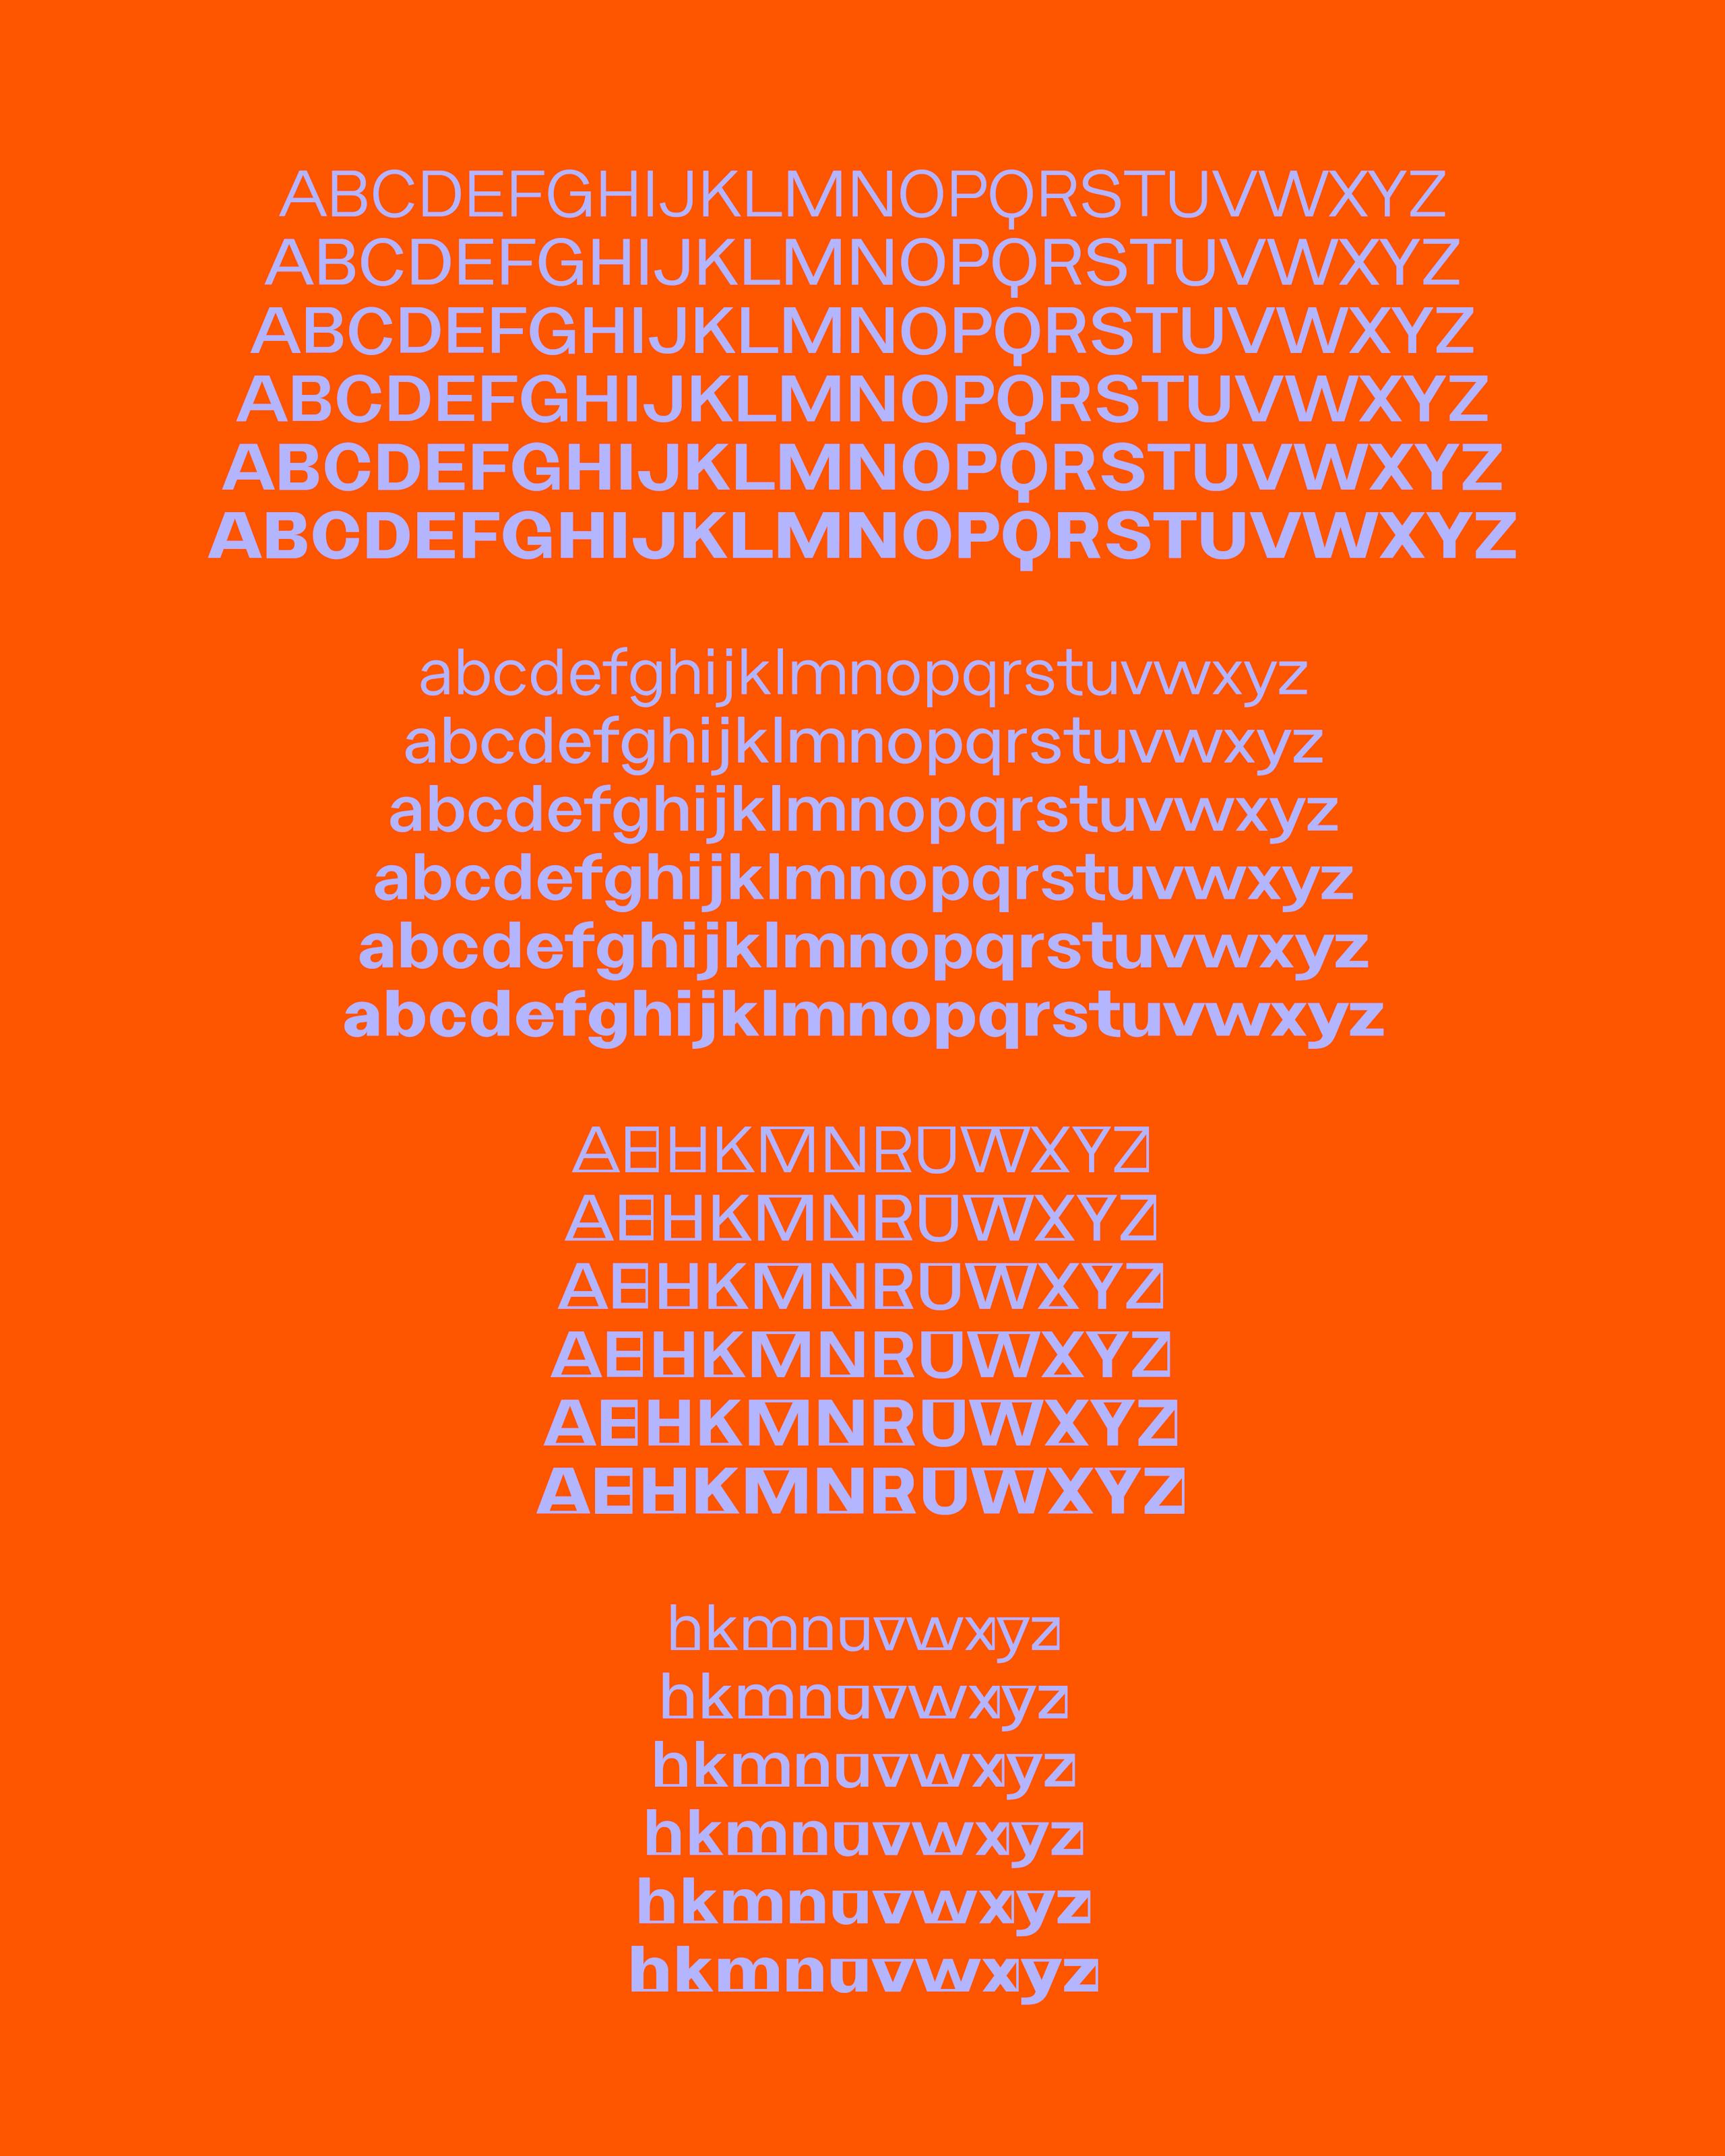 Anubis, Typeface, Gestaltung, Visuelle Gestaltung, Cedric Kegreiss, Basel, Grafik, Graphic, CH, Design